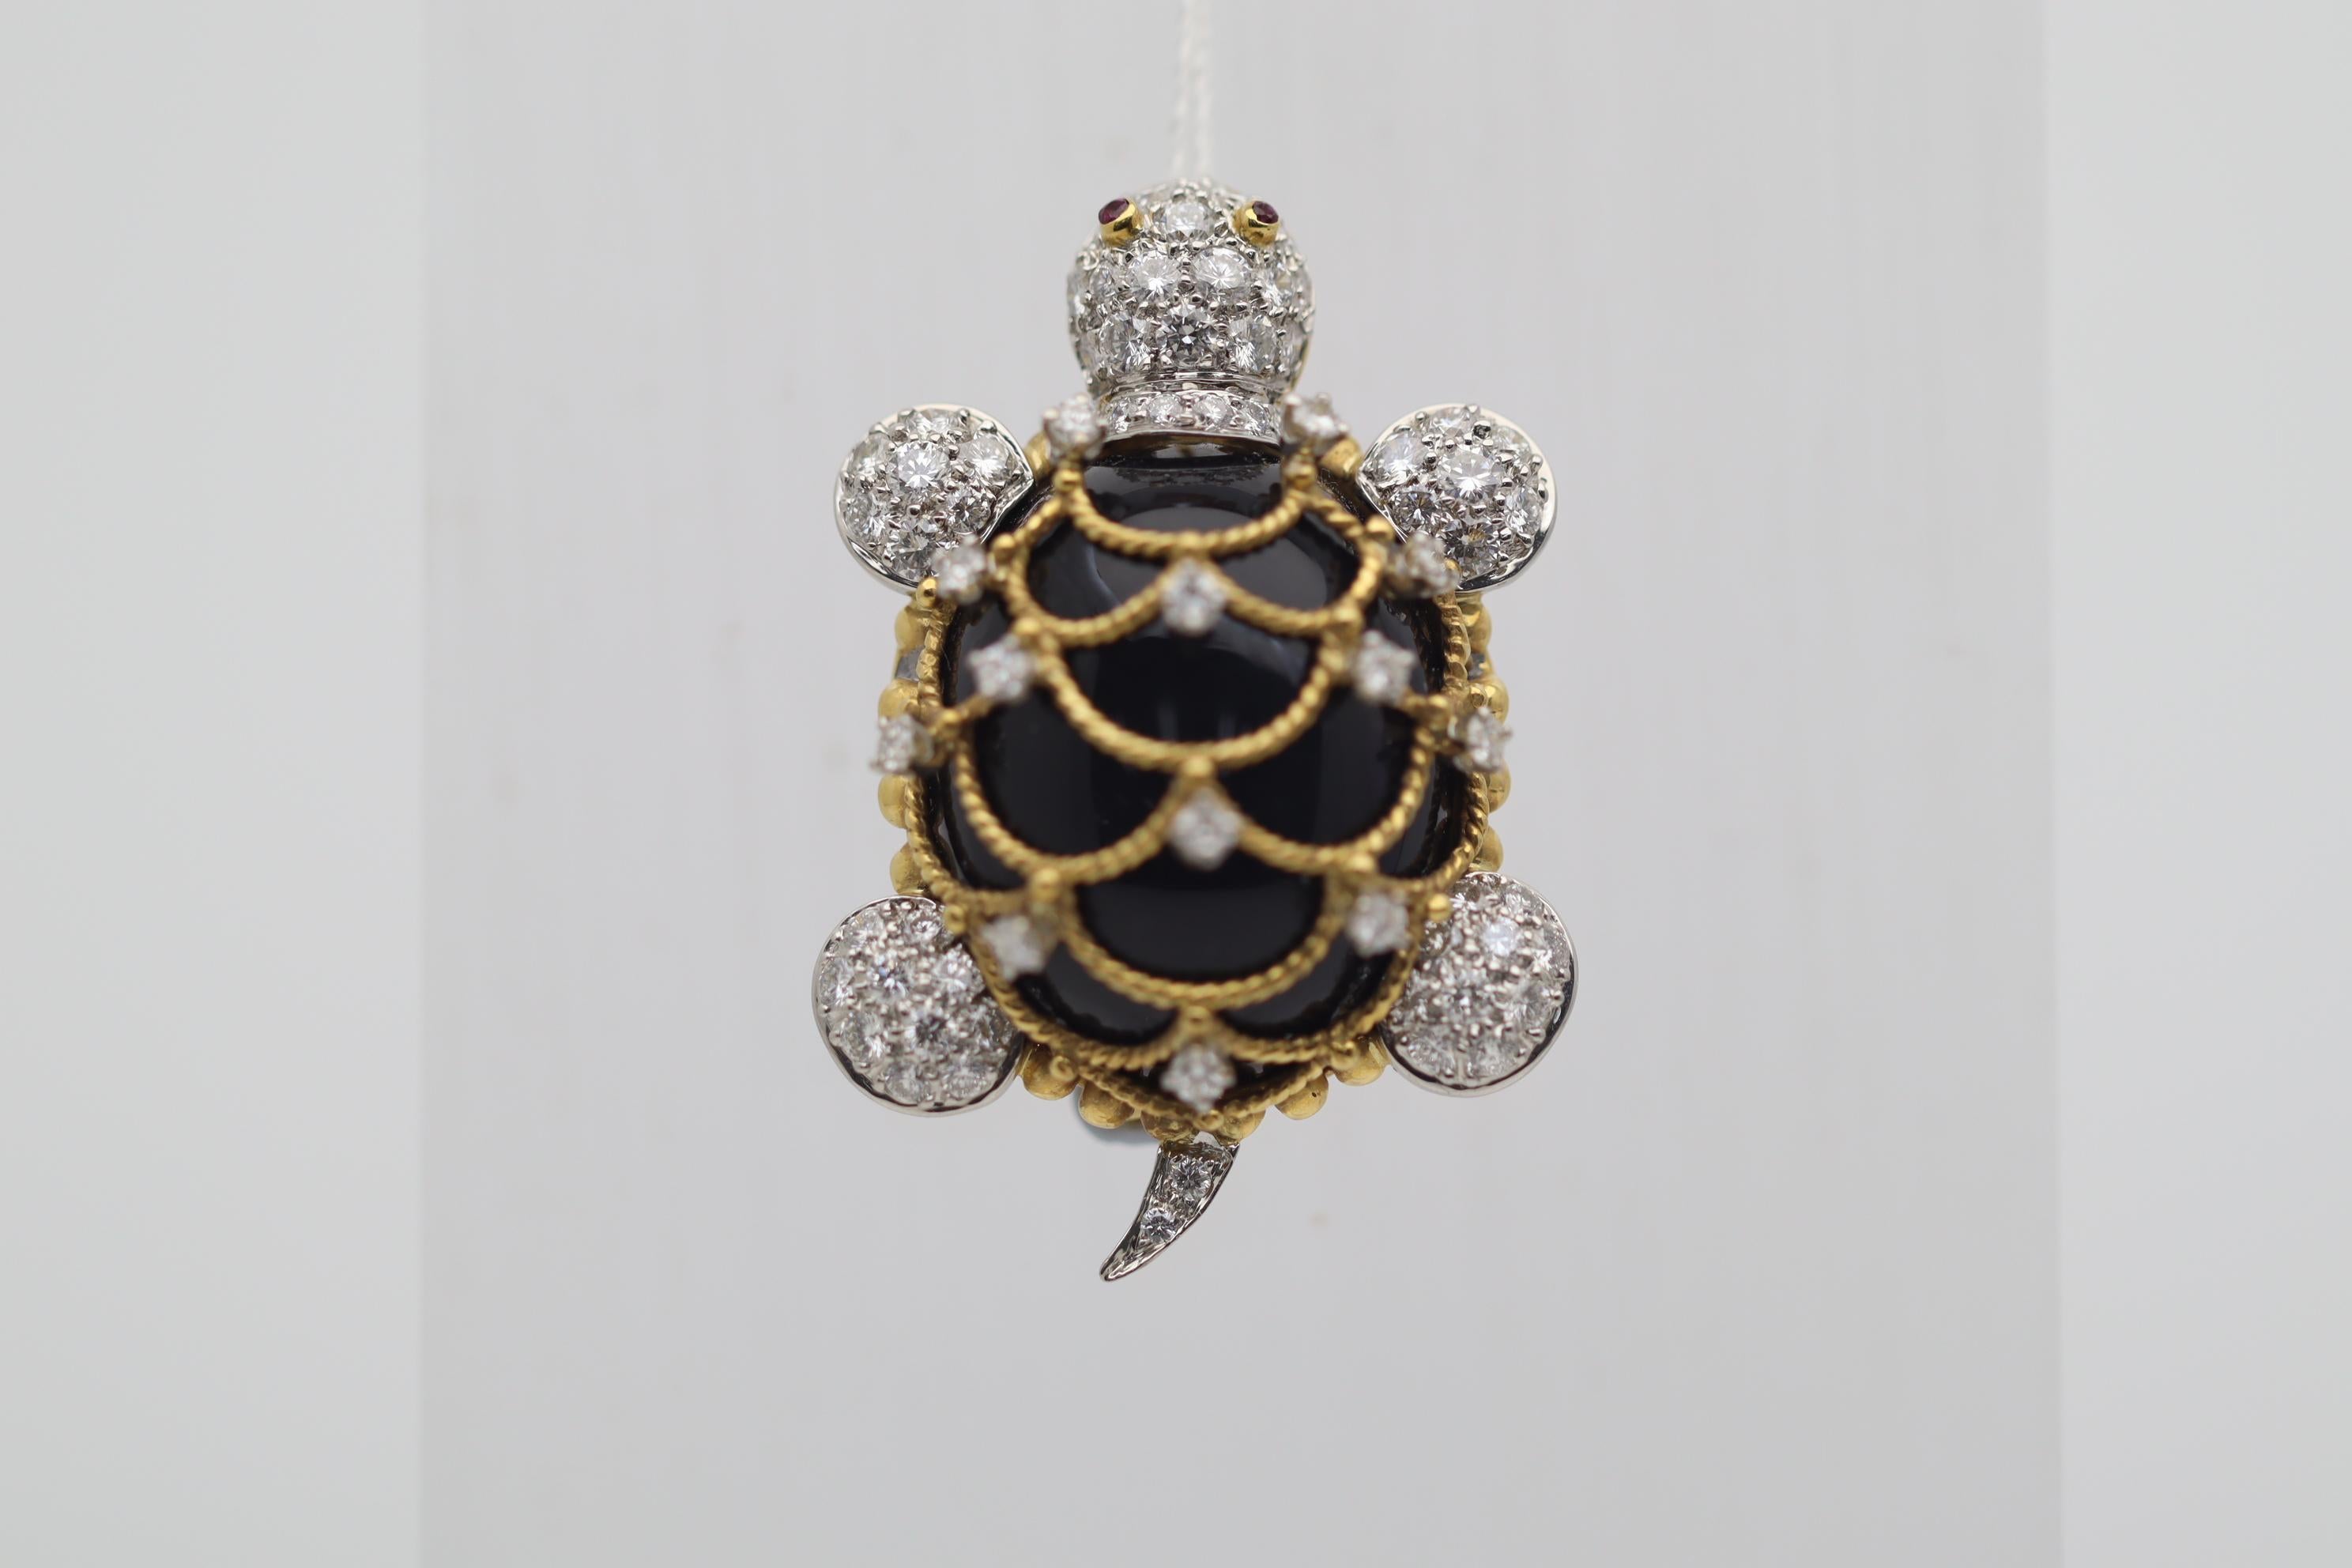 Une broche tortue cloutée de diamants, super douce et bien faite ! Sa coquille est constituée d'une seule pièce d'onyx noir poli, qui est ornée de stries en or jaune 18 carats formant le motif de la coquille. De plus, 2,10 carats de diamants ronds